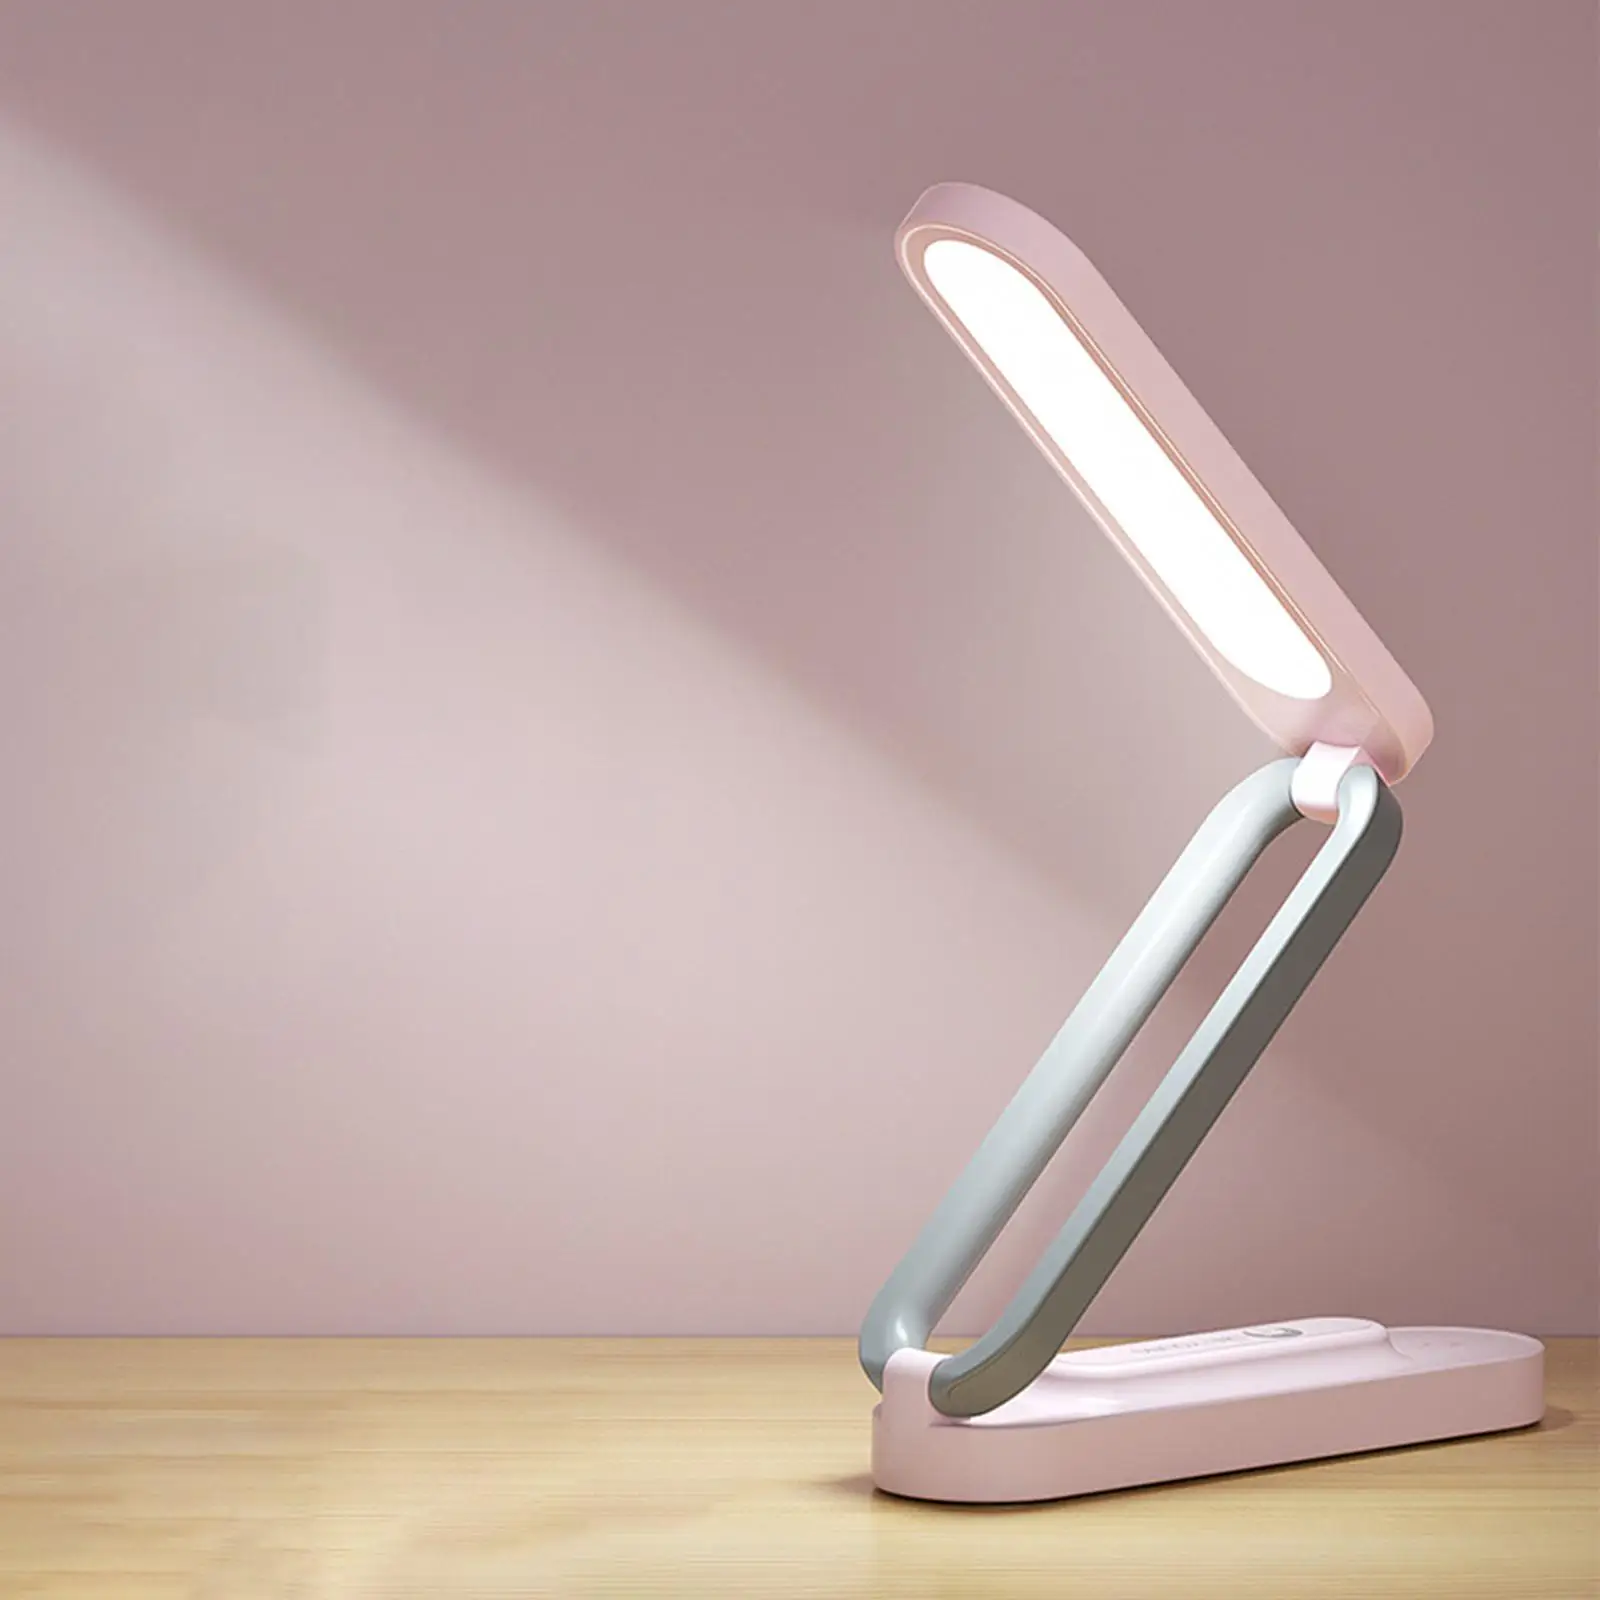 Rechargeable Table Light Eye Caring 3 Lighting Modes LED Folded Desk Lamp Night Light for Home Working Bedroom Children Student